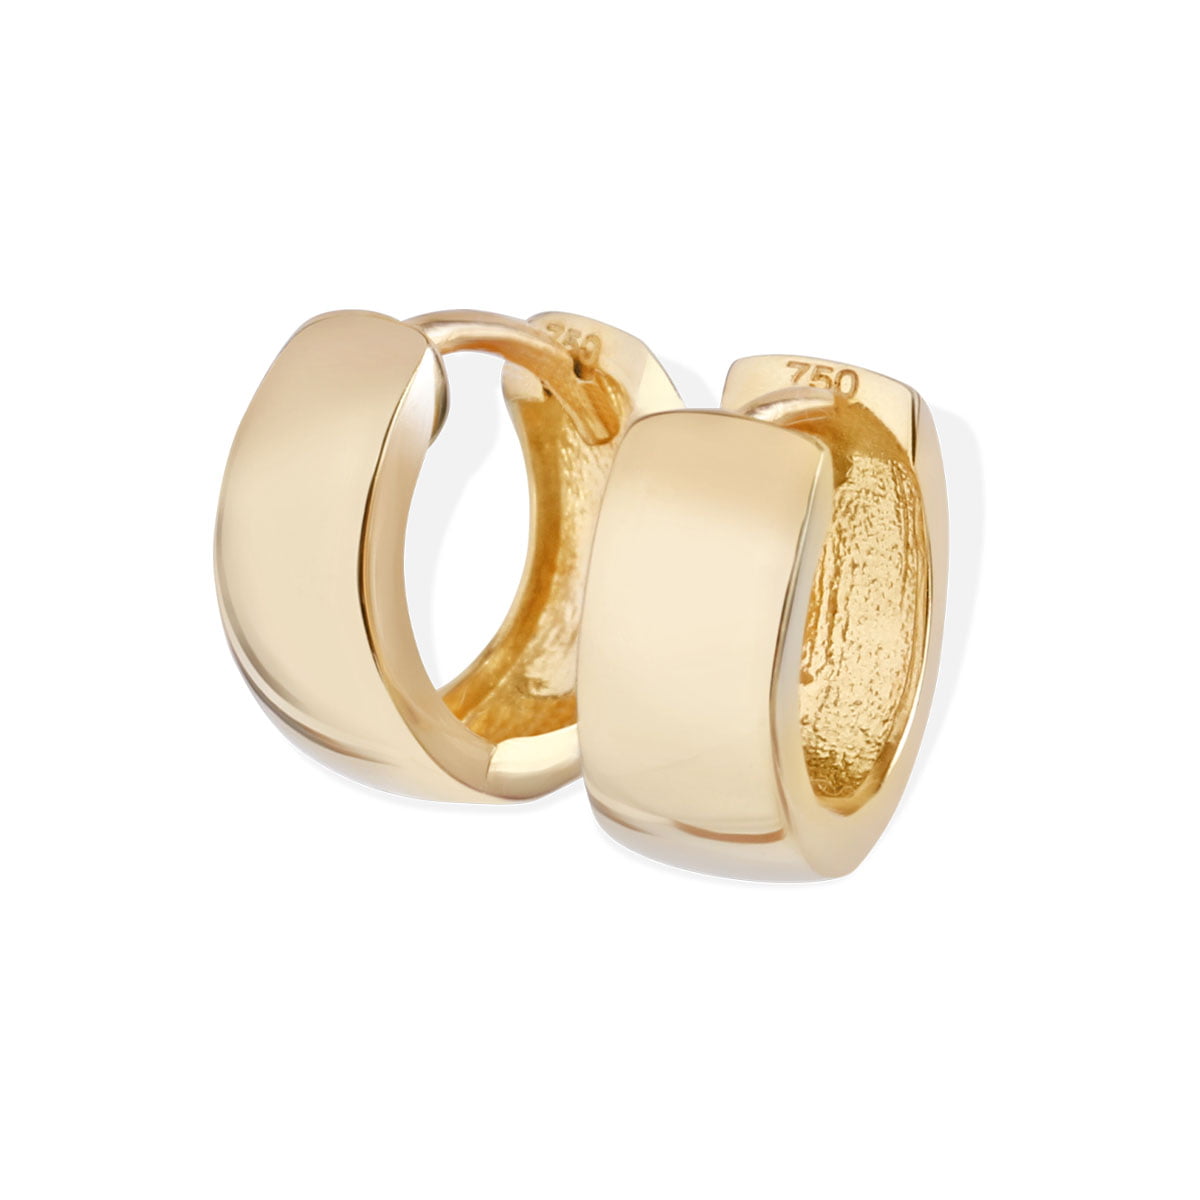 Buy 18K Gold Knot Hoop Earrings Gold Hoop Earrings UK Gold Online in India   Etsy